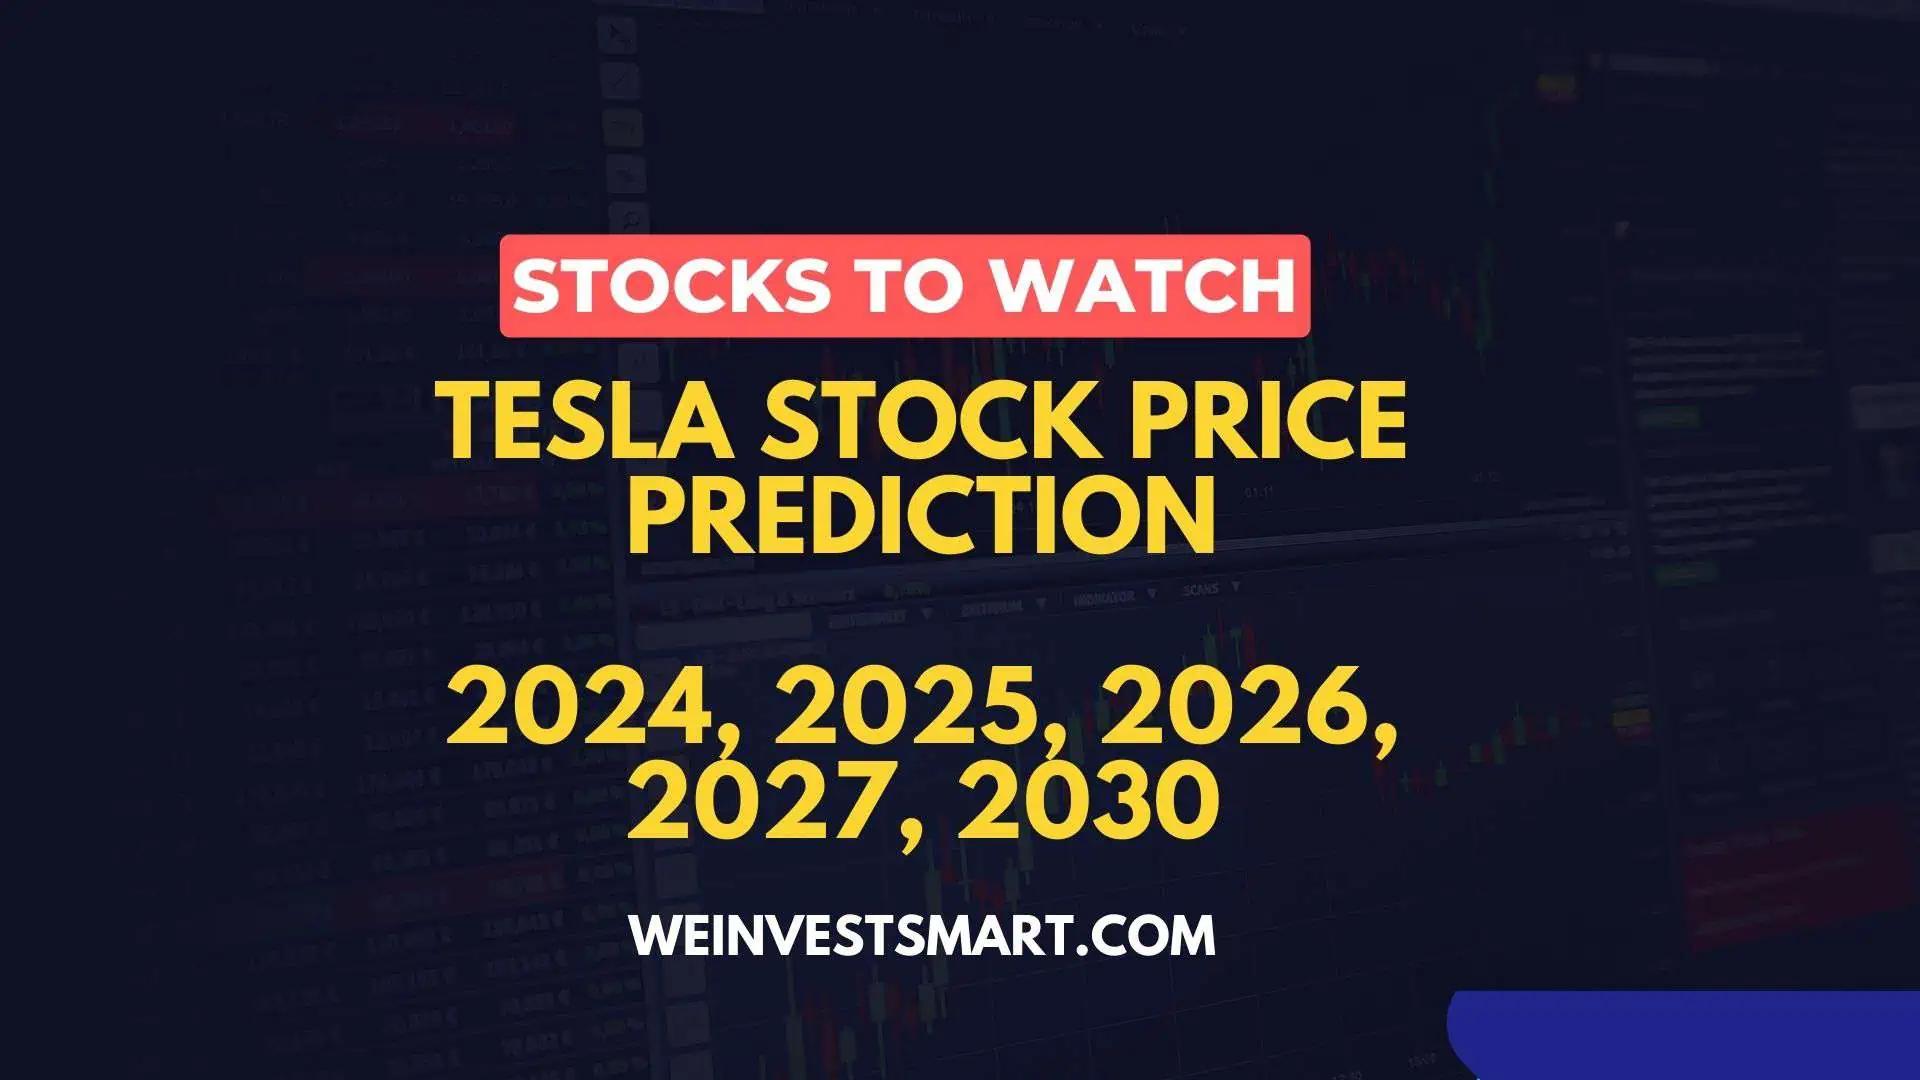 Tesla Stock Price Prediction 2024, 2025, 2026, 2027, 2030